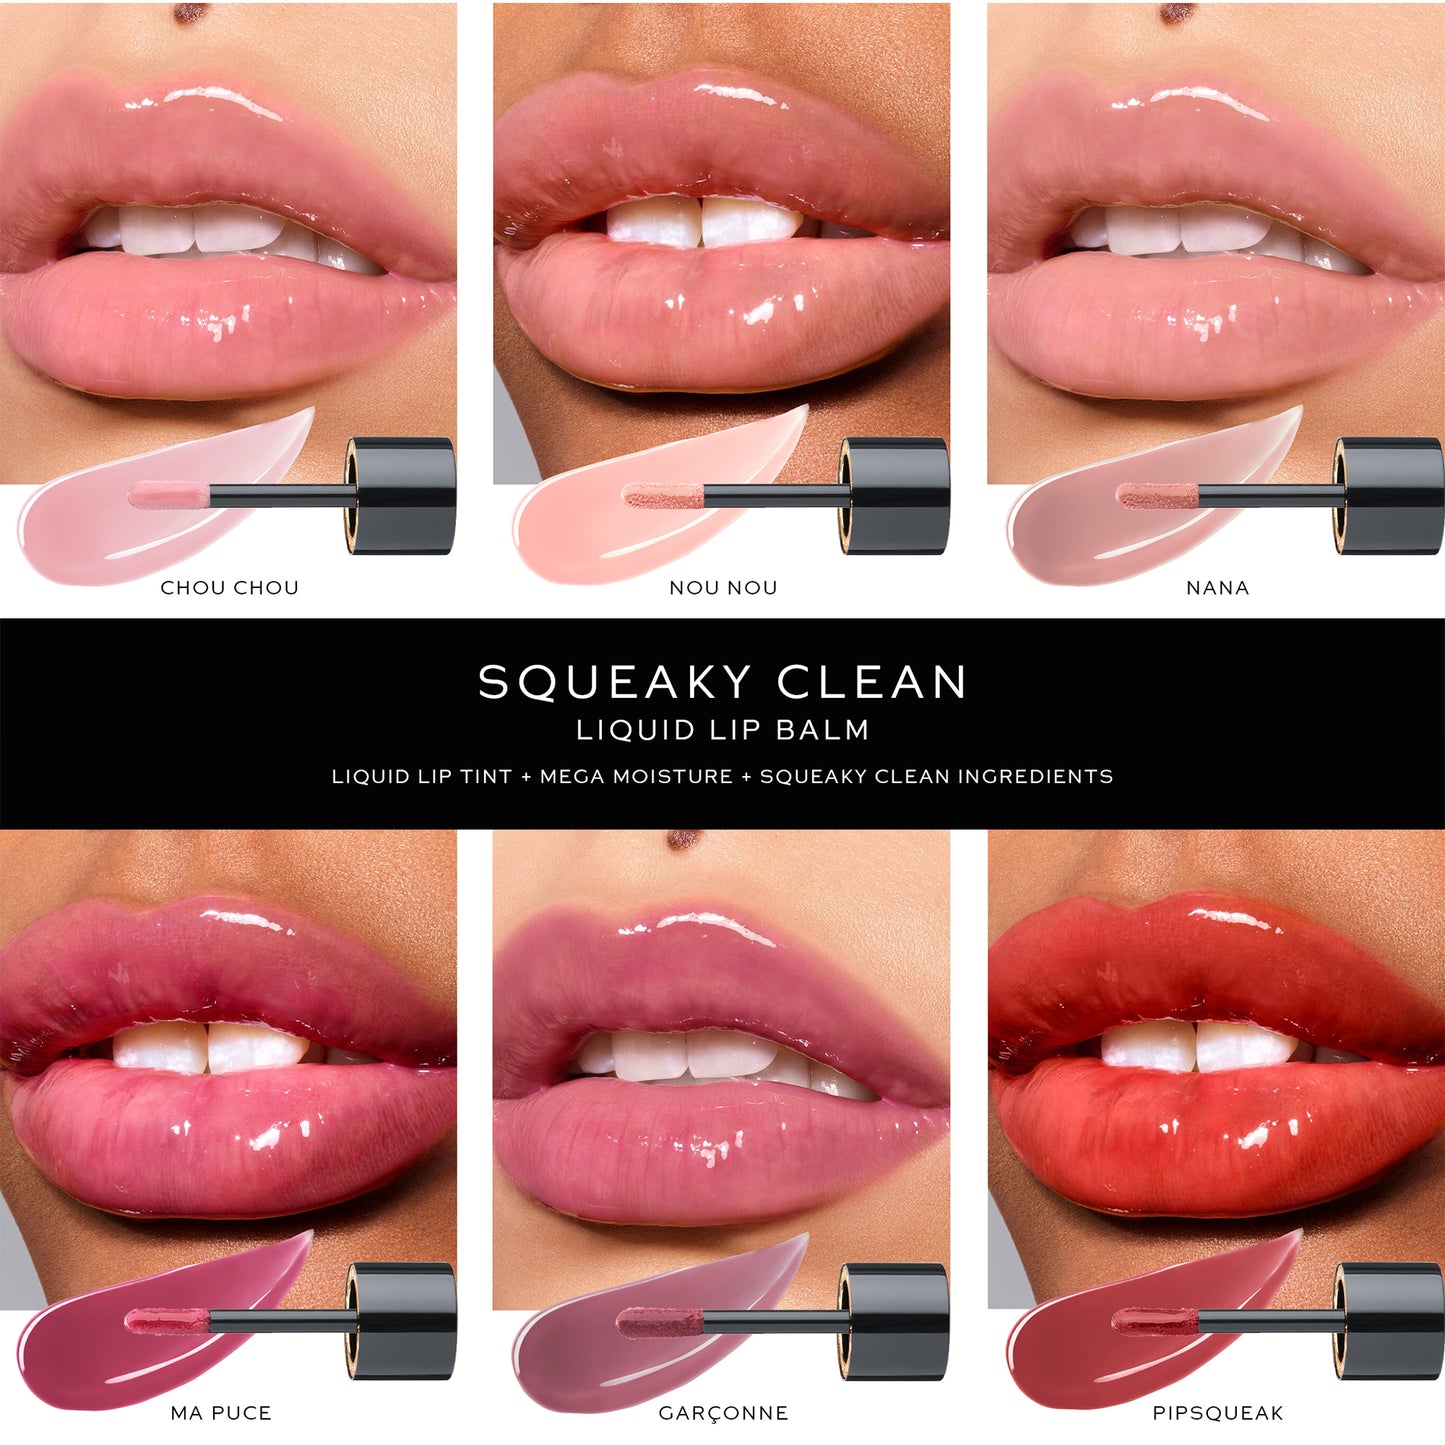 Squeaky Clean Lip Balm - Chou Chou